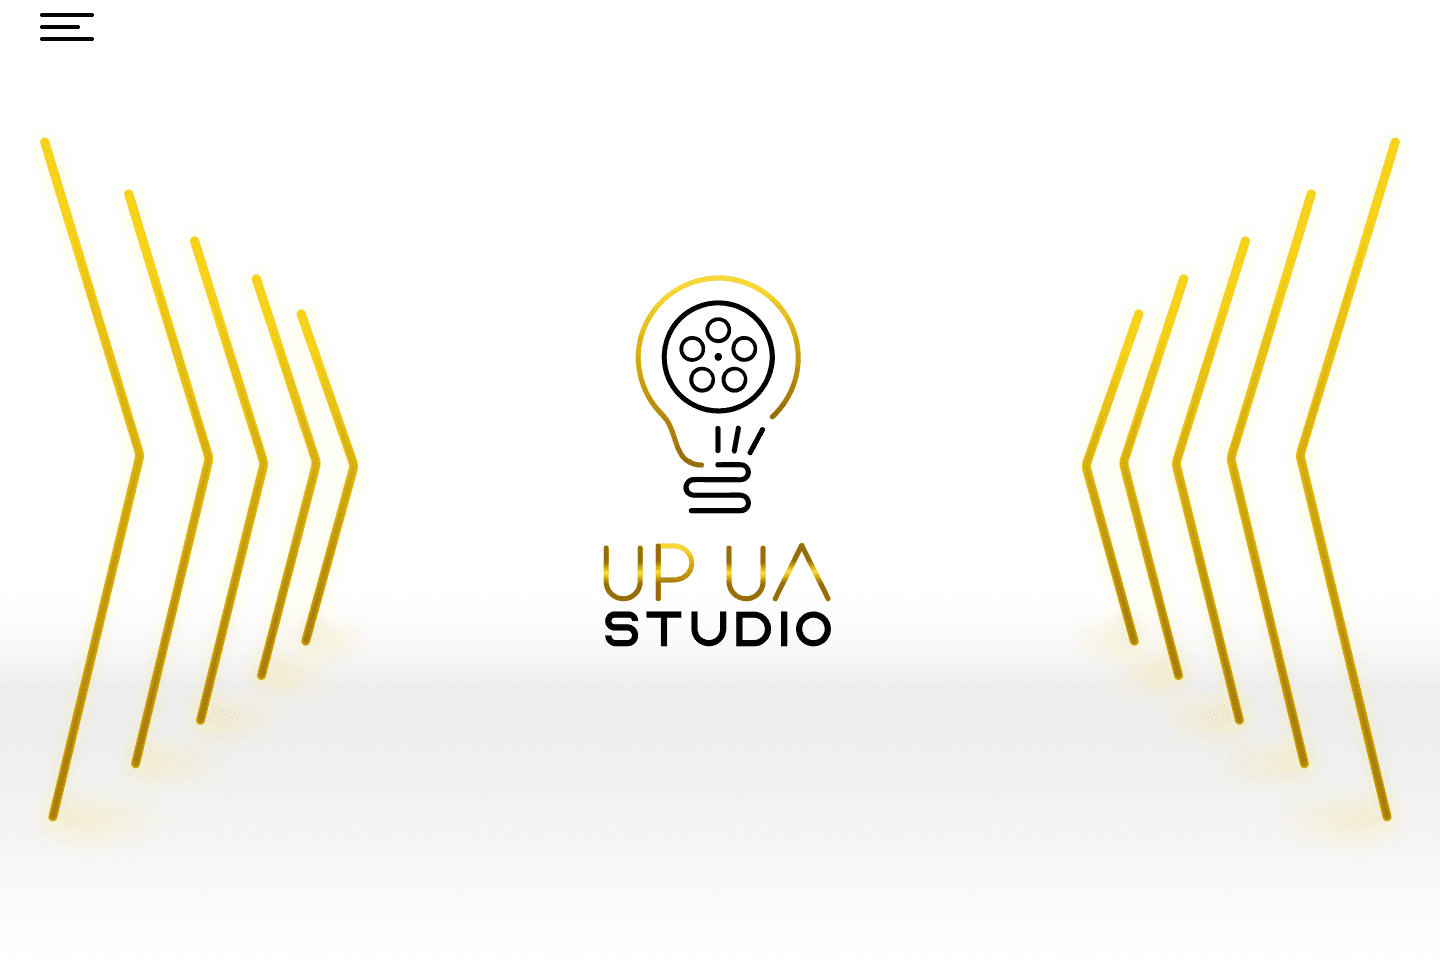 UP_UA_STUDIO banner